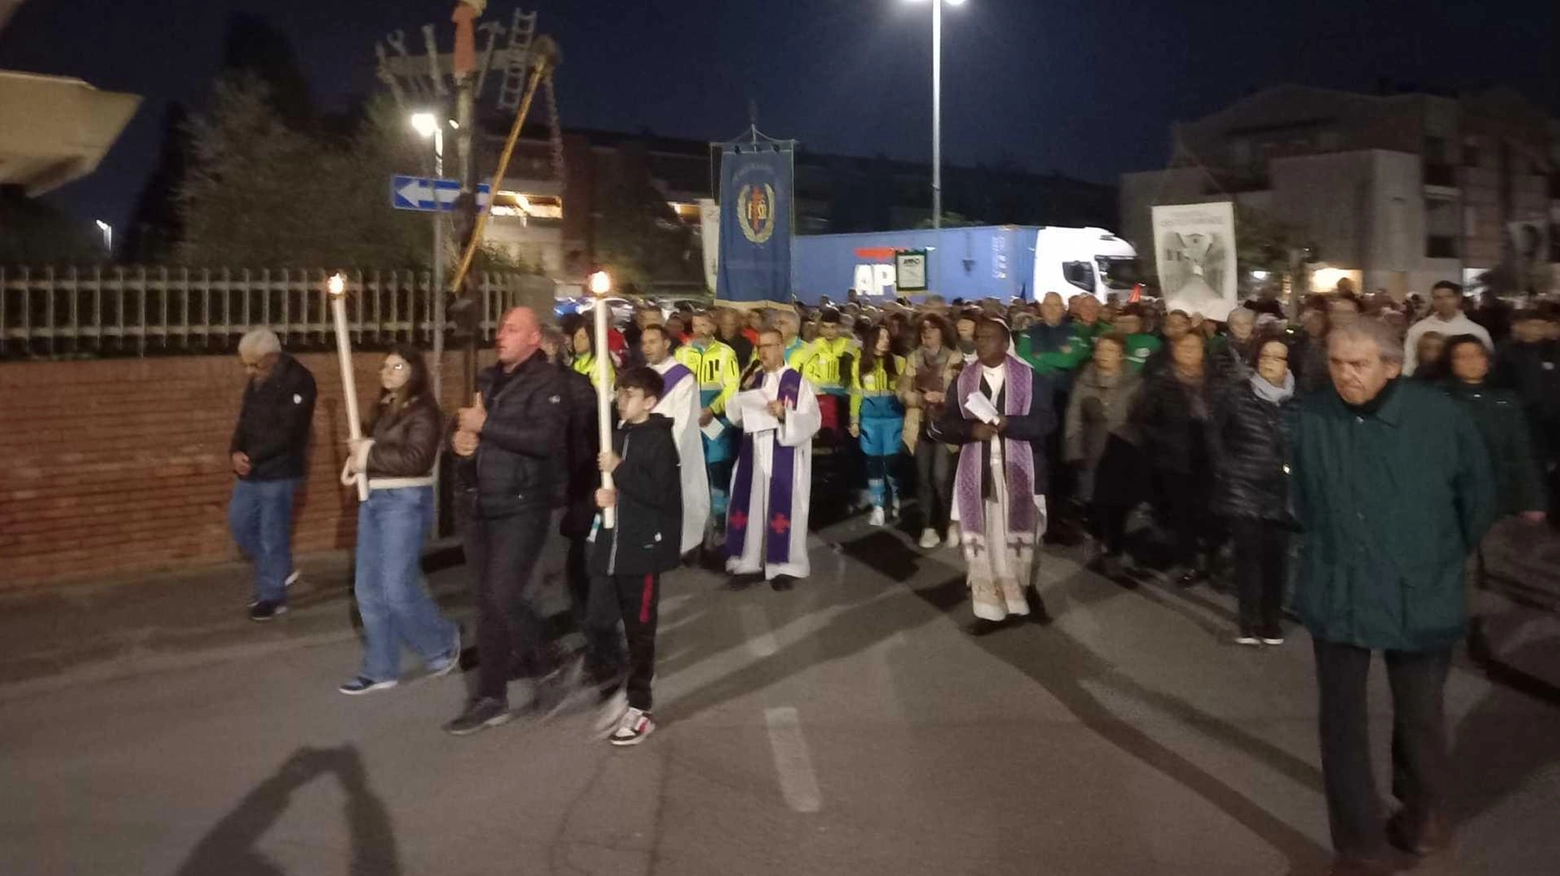 Numerosa partecipazione e coinvolgimento delle associazioni locali caratterizzano la Via Crucis a Castelfranco, con meditazioni originali e riflessioni significative.